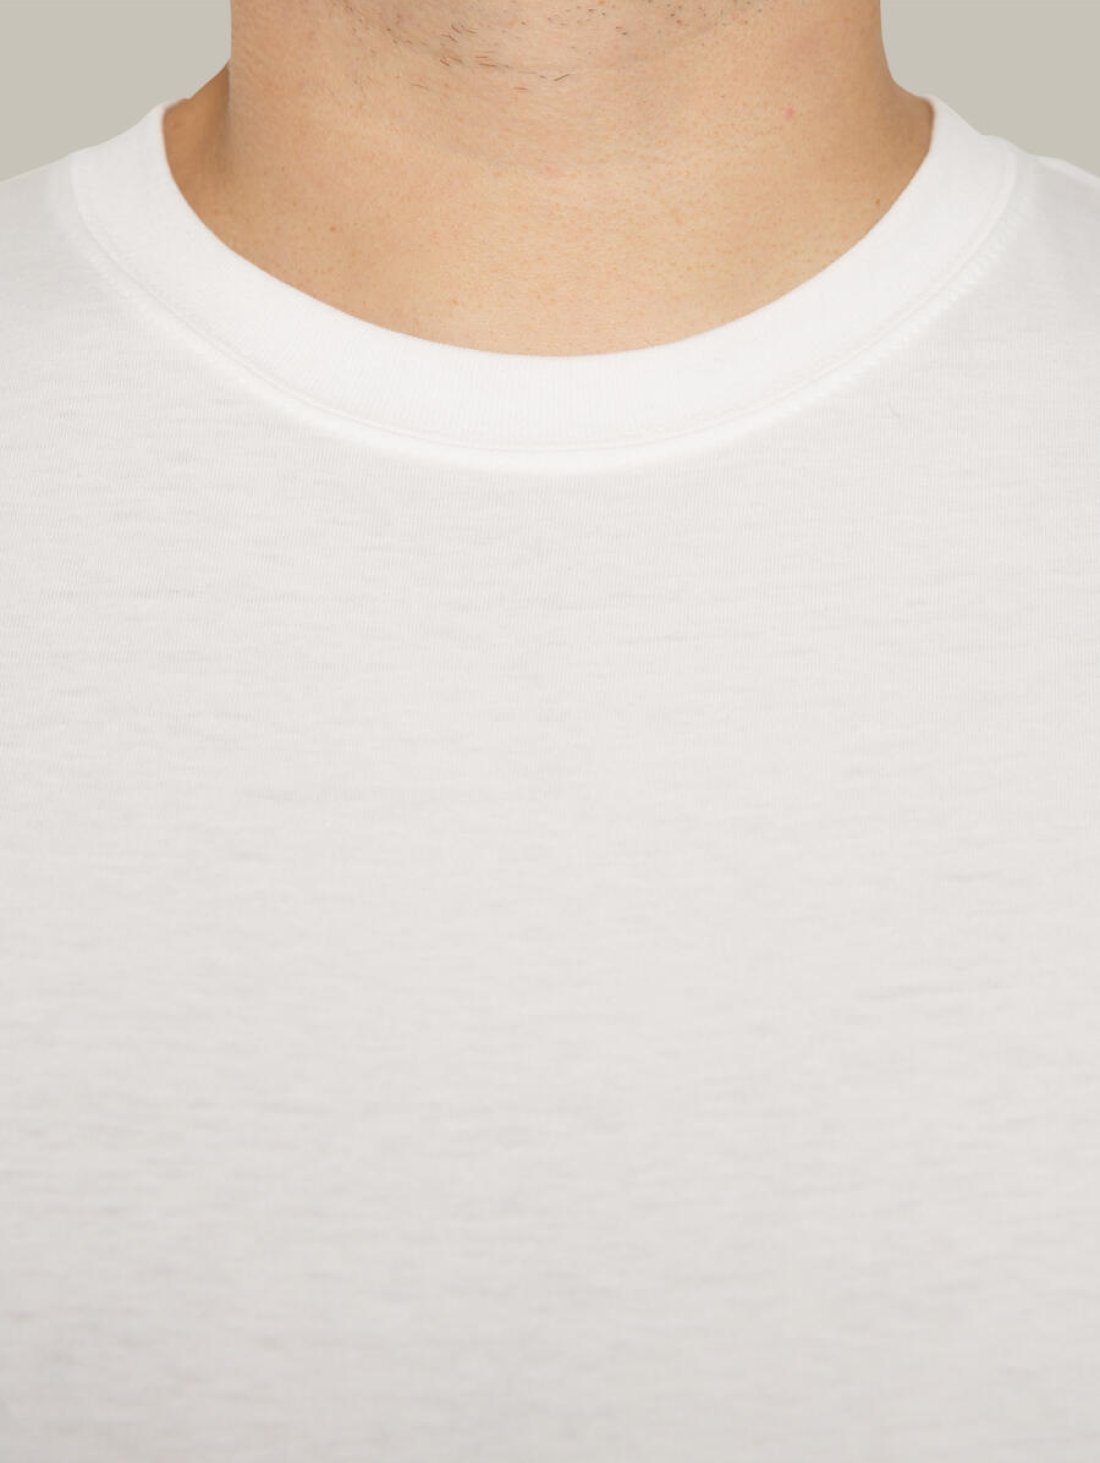 Чоловіча футболка, біла з принтом аватара Hopper 011